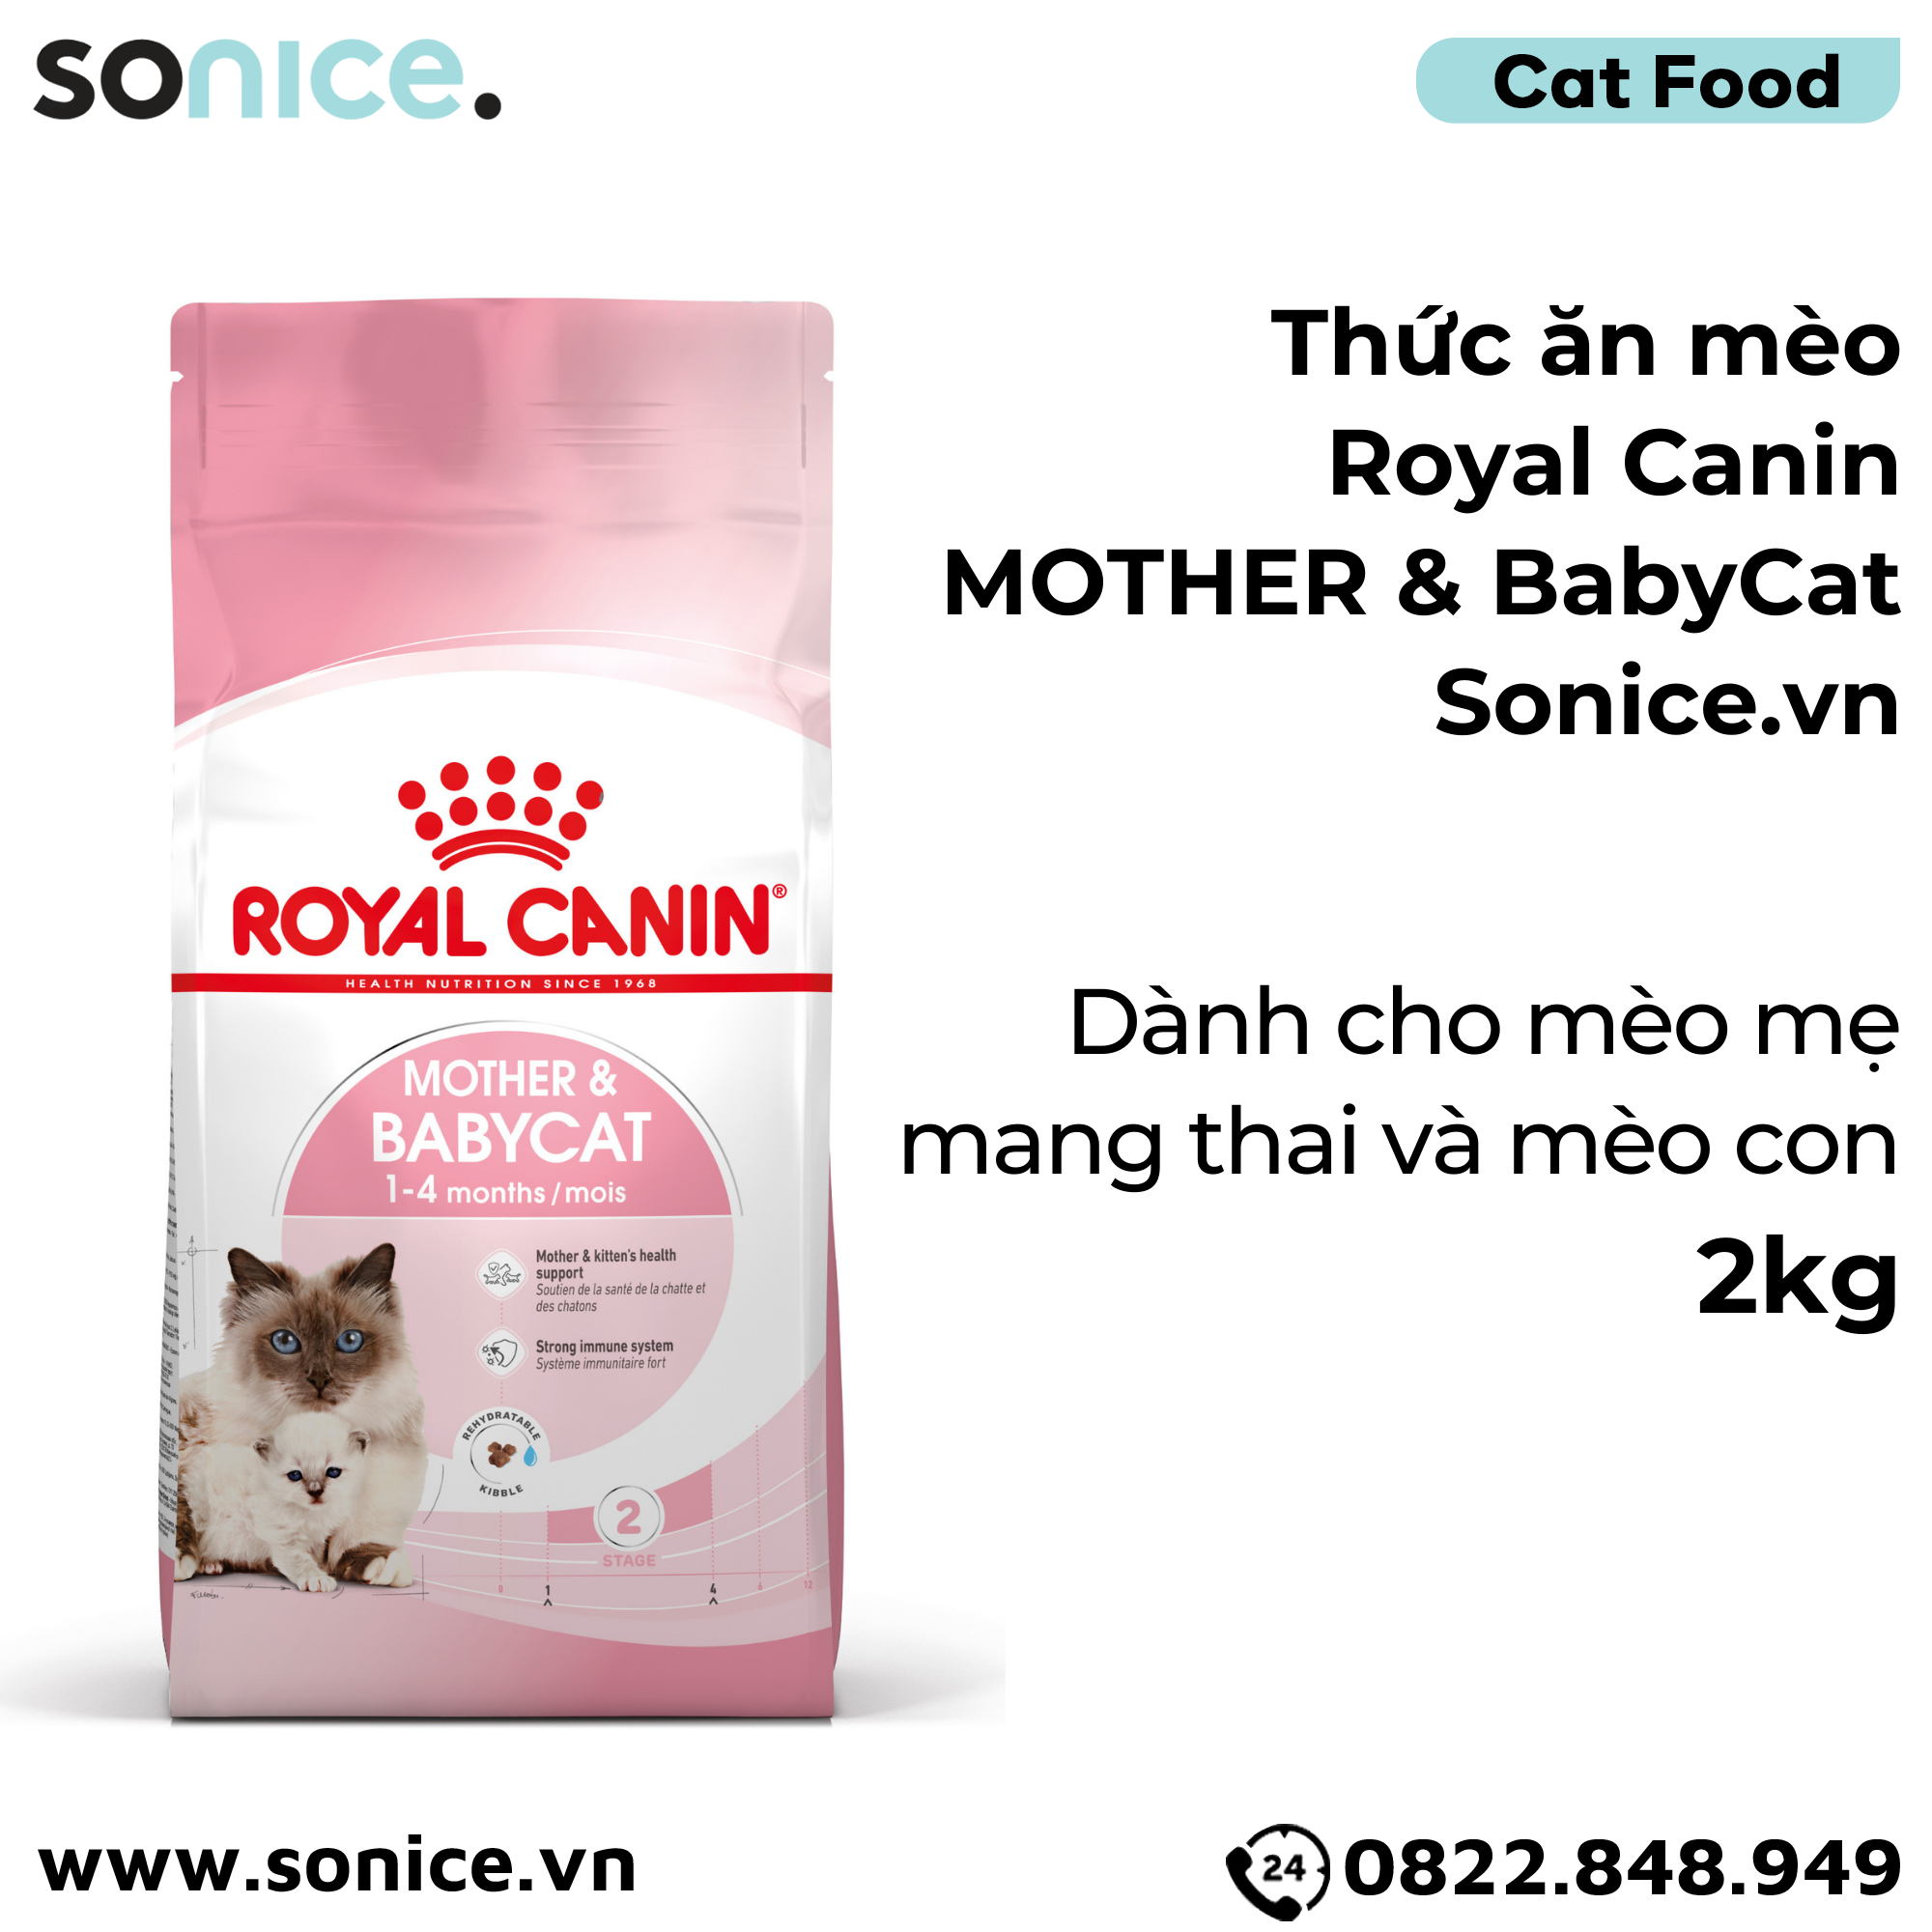  Thức ăn mèo Royal Canin MOTHER & BabyCat 2kg SONICE. 